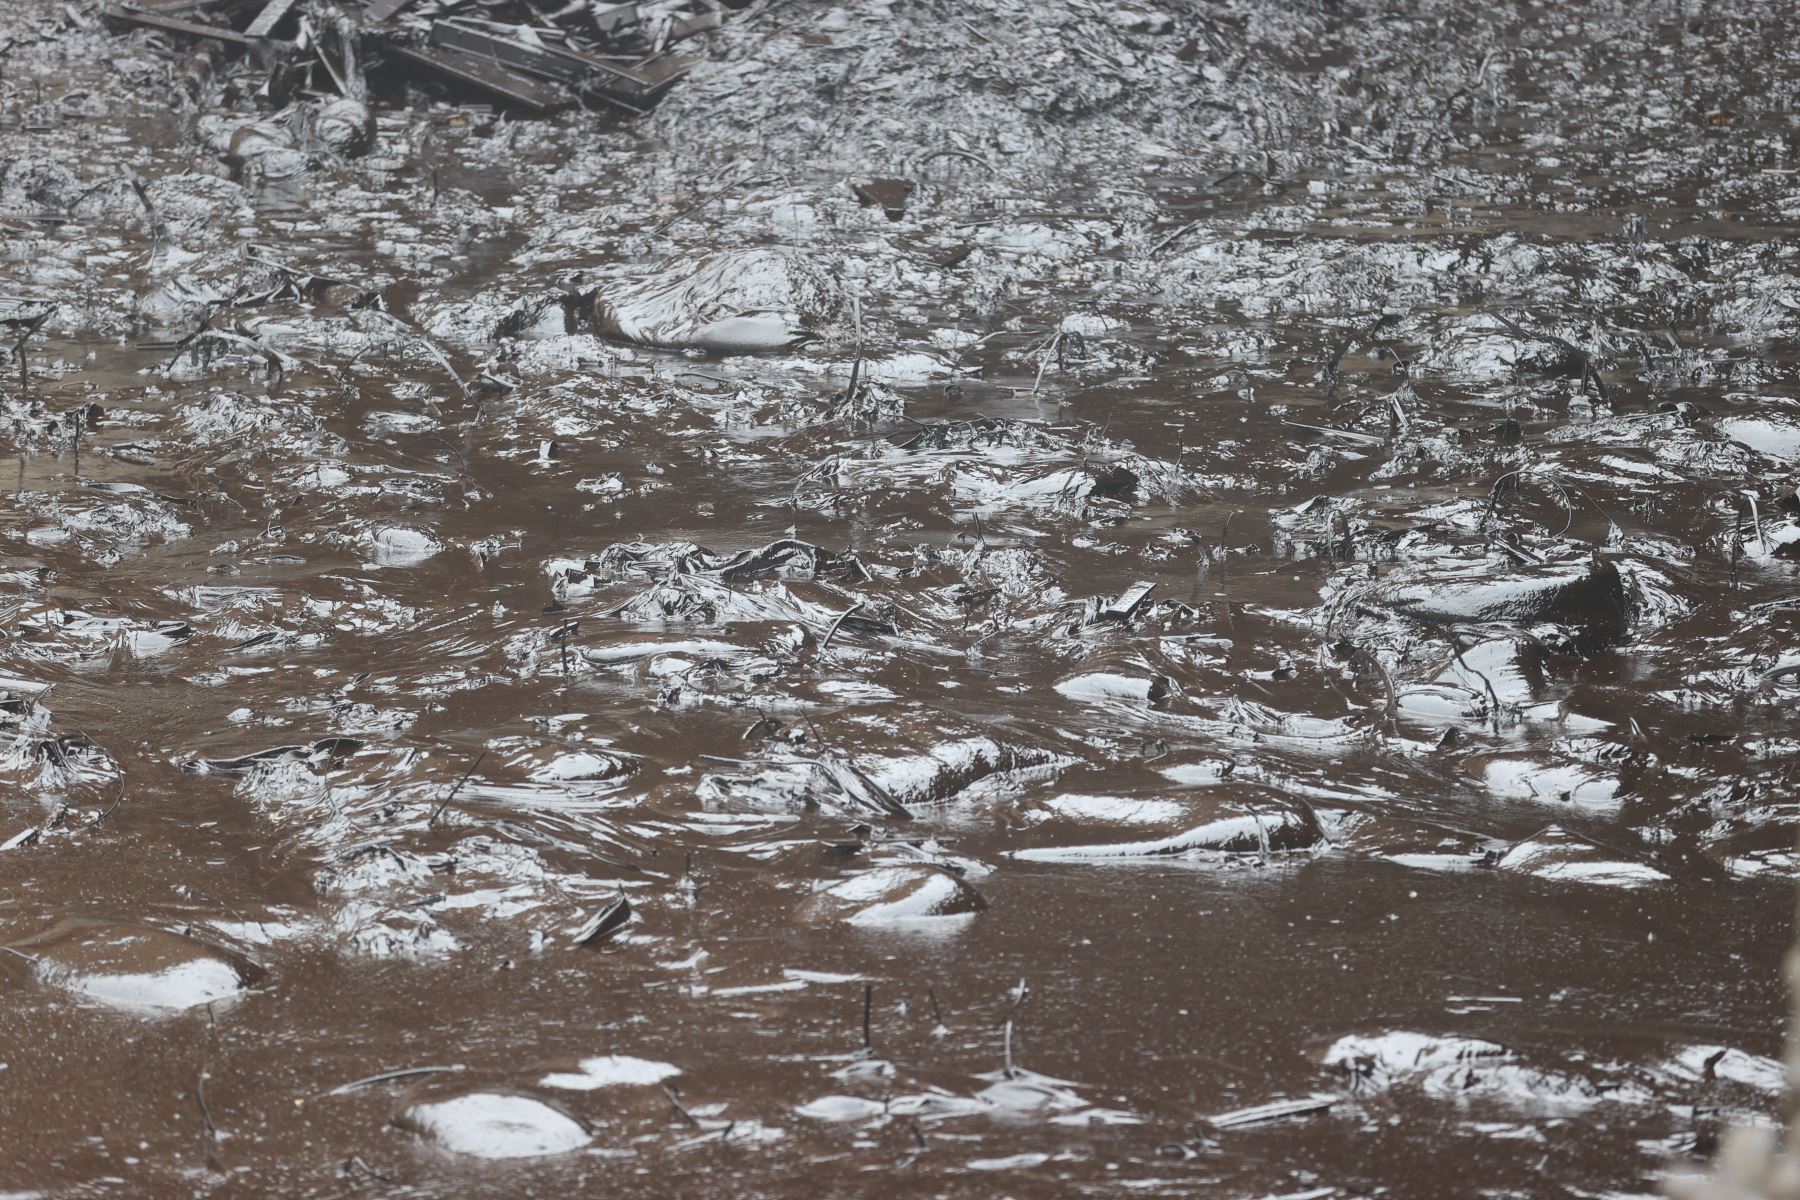 Continúan los trabajos de limpieza en la playa Cavero ubicada en Ventanilla. Este lugar es uno de los más afectados por el derrame de petróleo ocasionado por la empresa Repsol y que causó un gran impacto ambiental. Foto: ANDINA/Vidal Tarqui